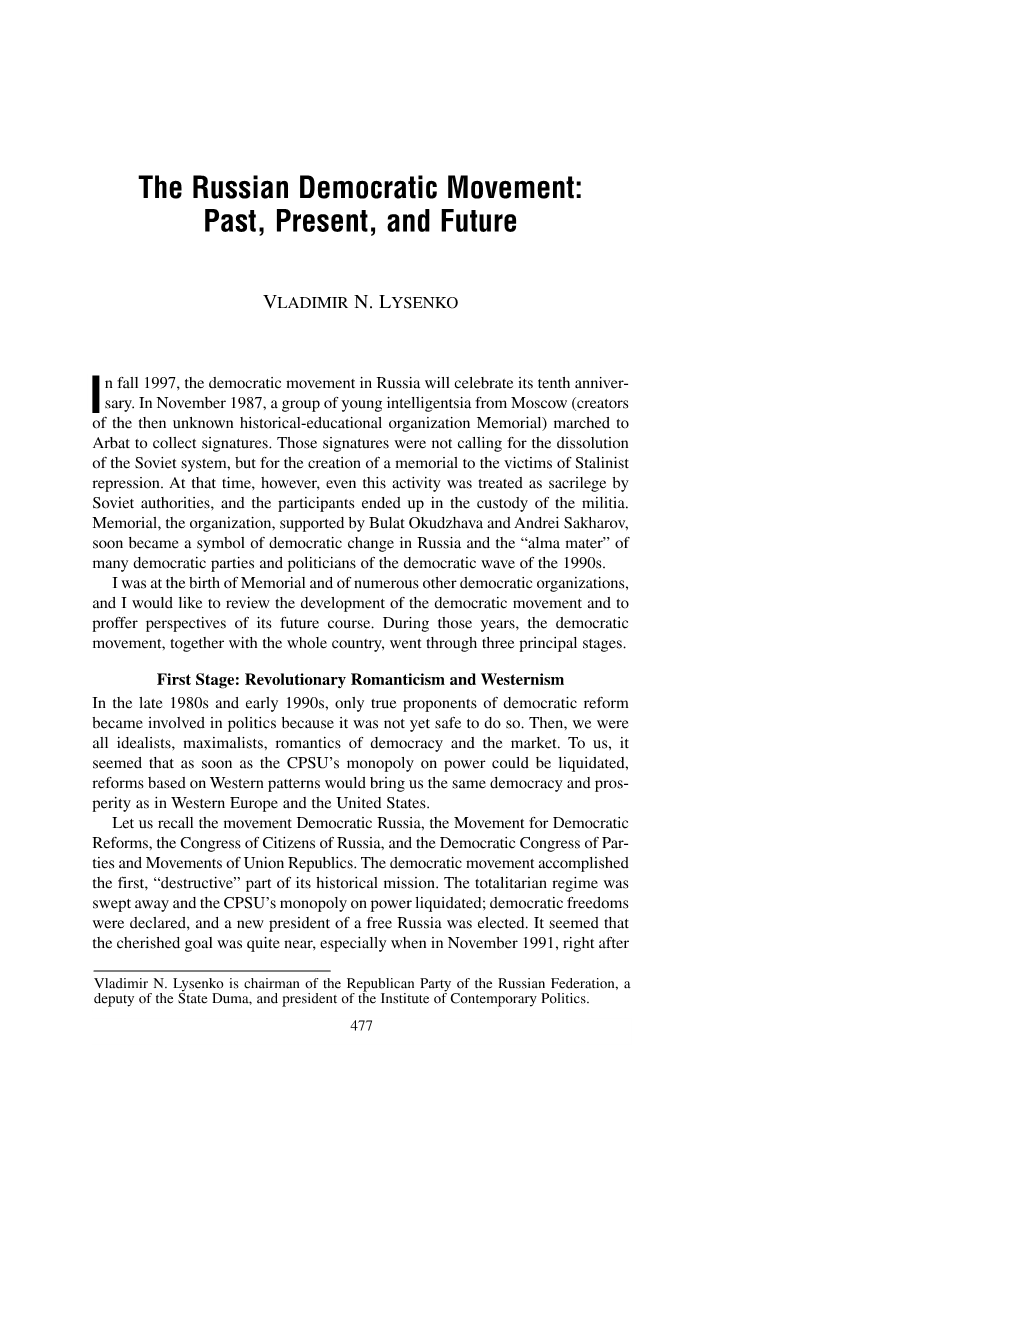 The Russian Democratic Movement: Past, Present, and Future